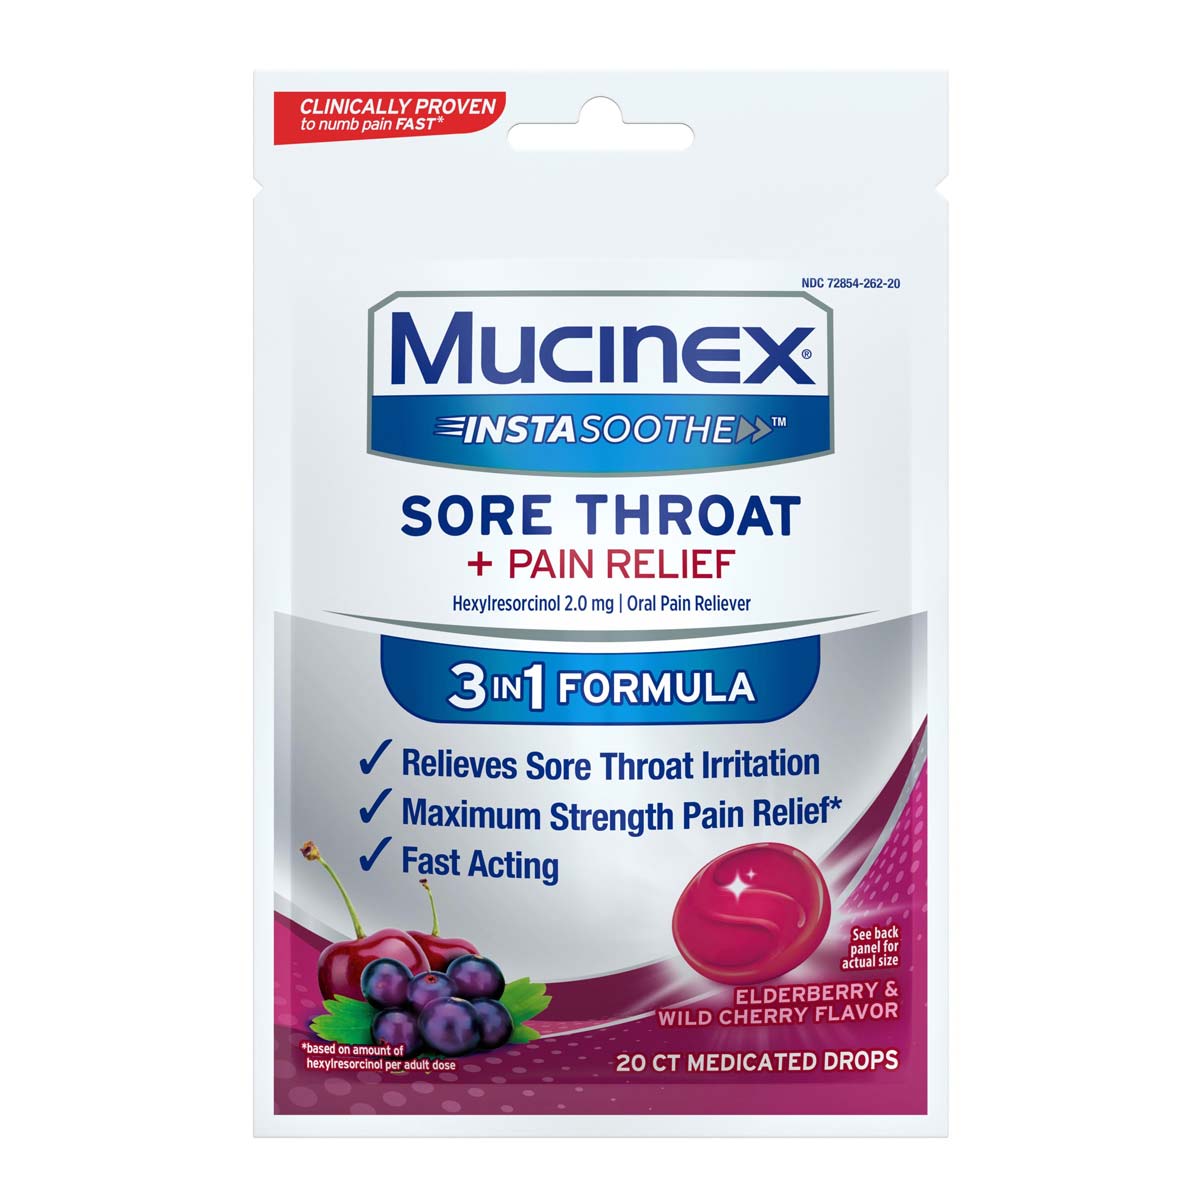 Mucinex InstaSoothe Sore Throat + Pain Relief | Mucinex USA